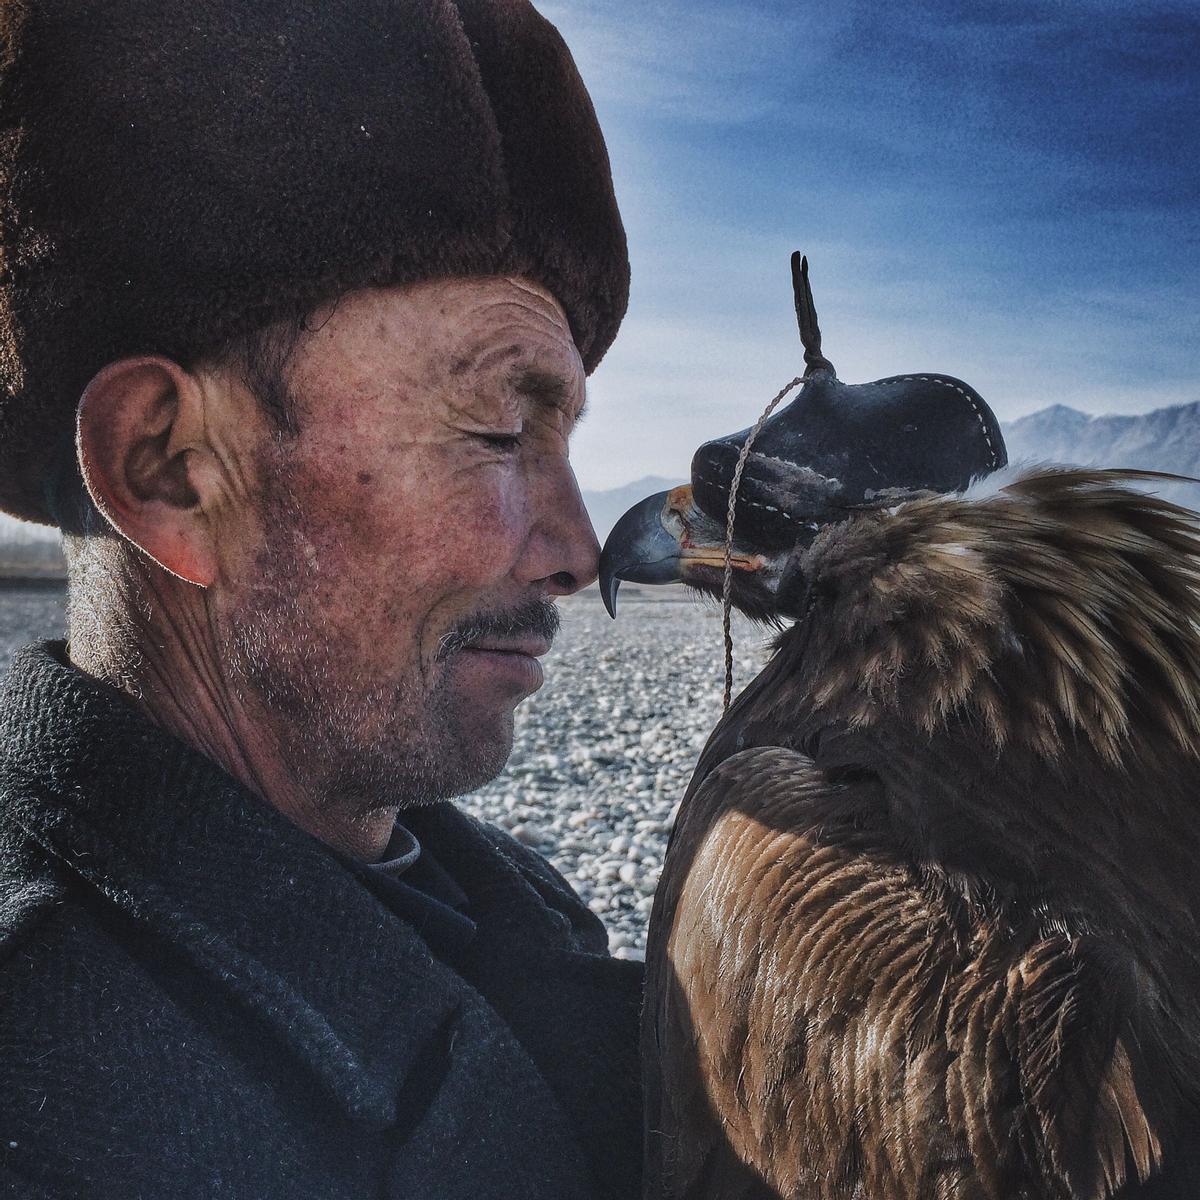 Man and the Eagle de Siyuan Niu, fotografía ganadora del IPPAWARDS 2016